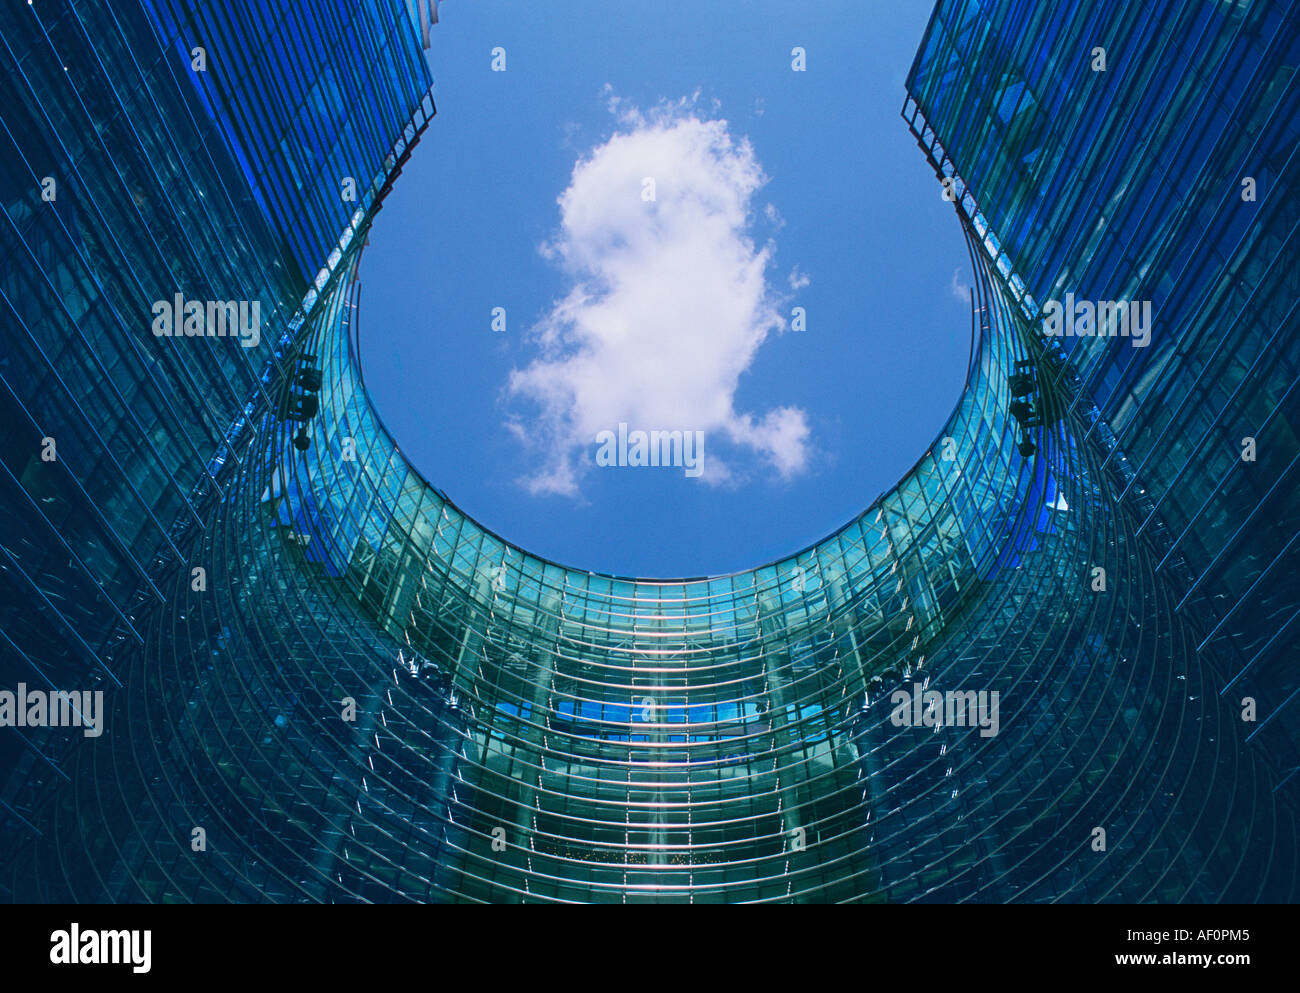 New York le bâtiment résidentiel et de bureau de la tour Bloomberg. Détail de bâtiment circulaire en verre Midtown Manhattan, États-Unis. Architecte: Cesar Pelli Banque D'Images